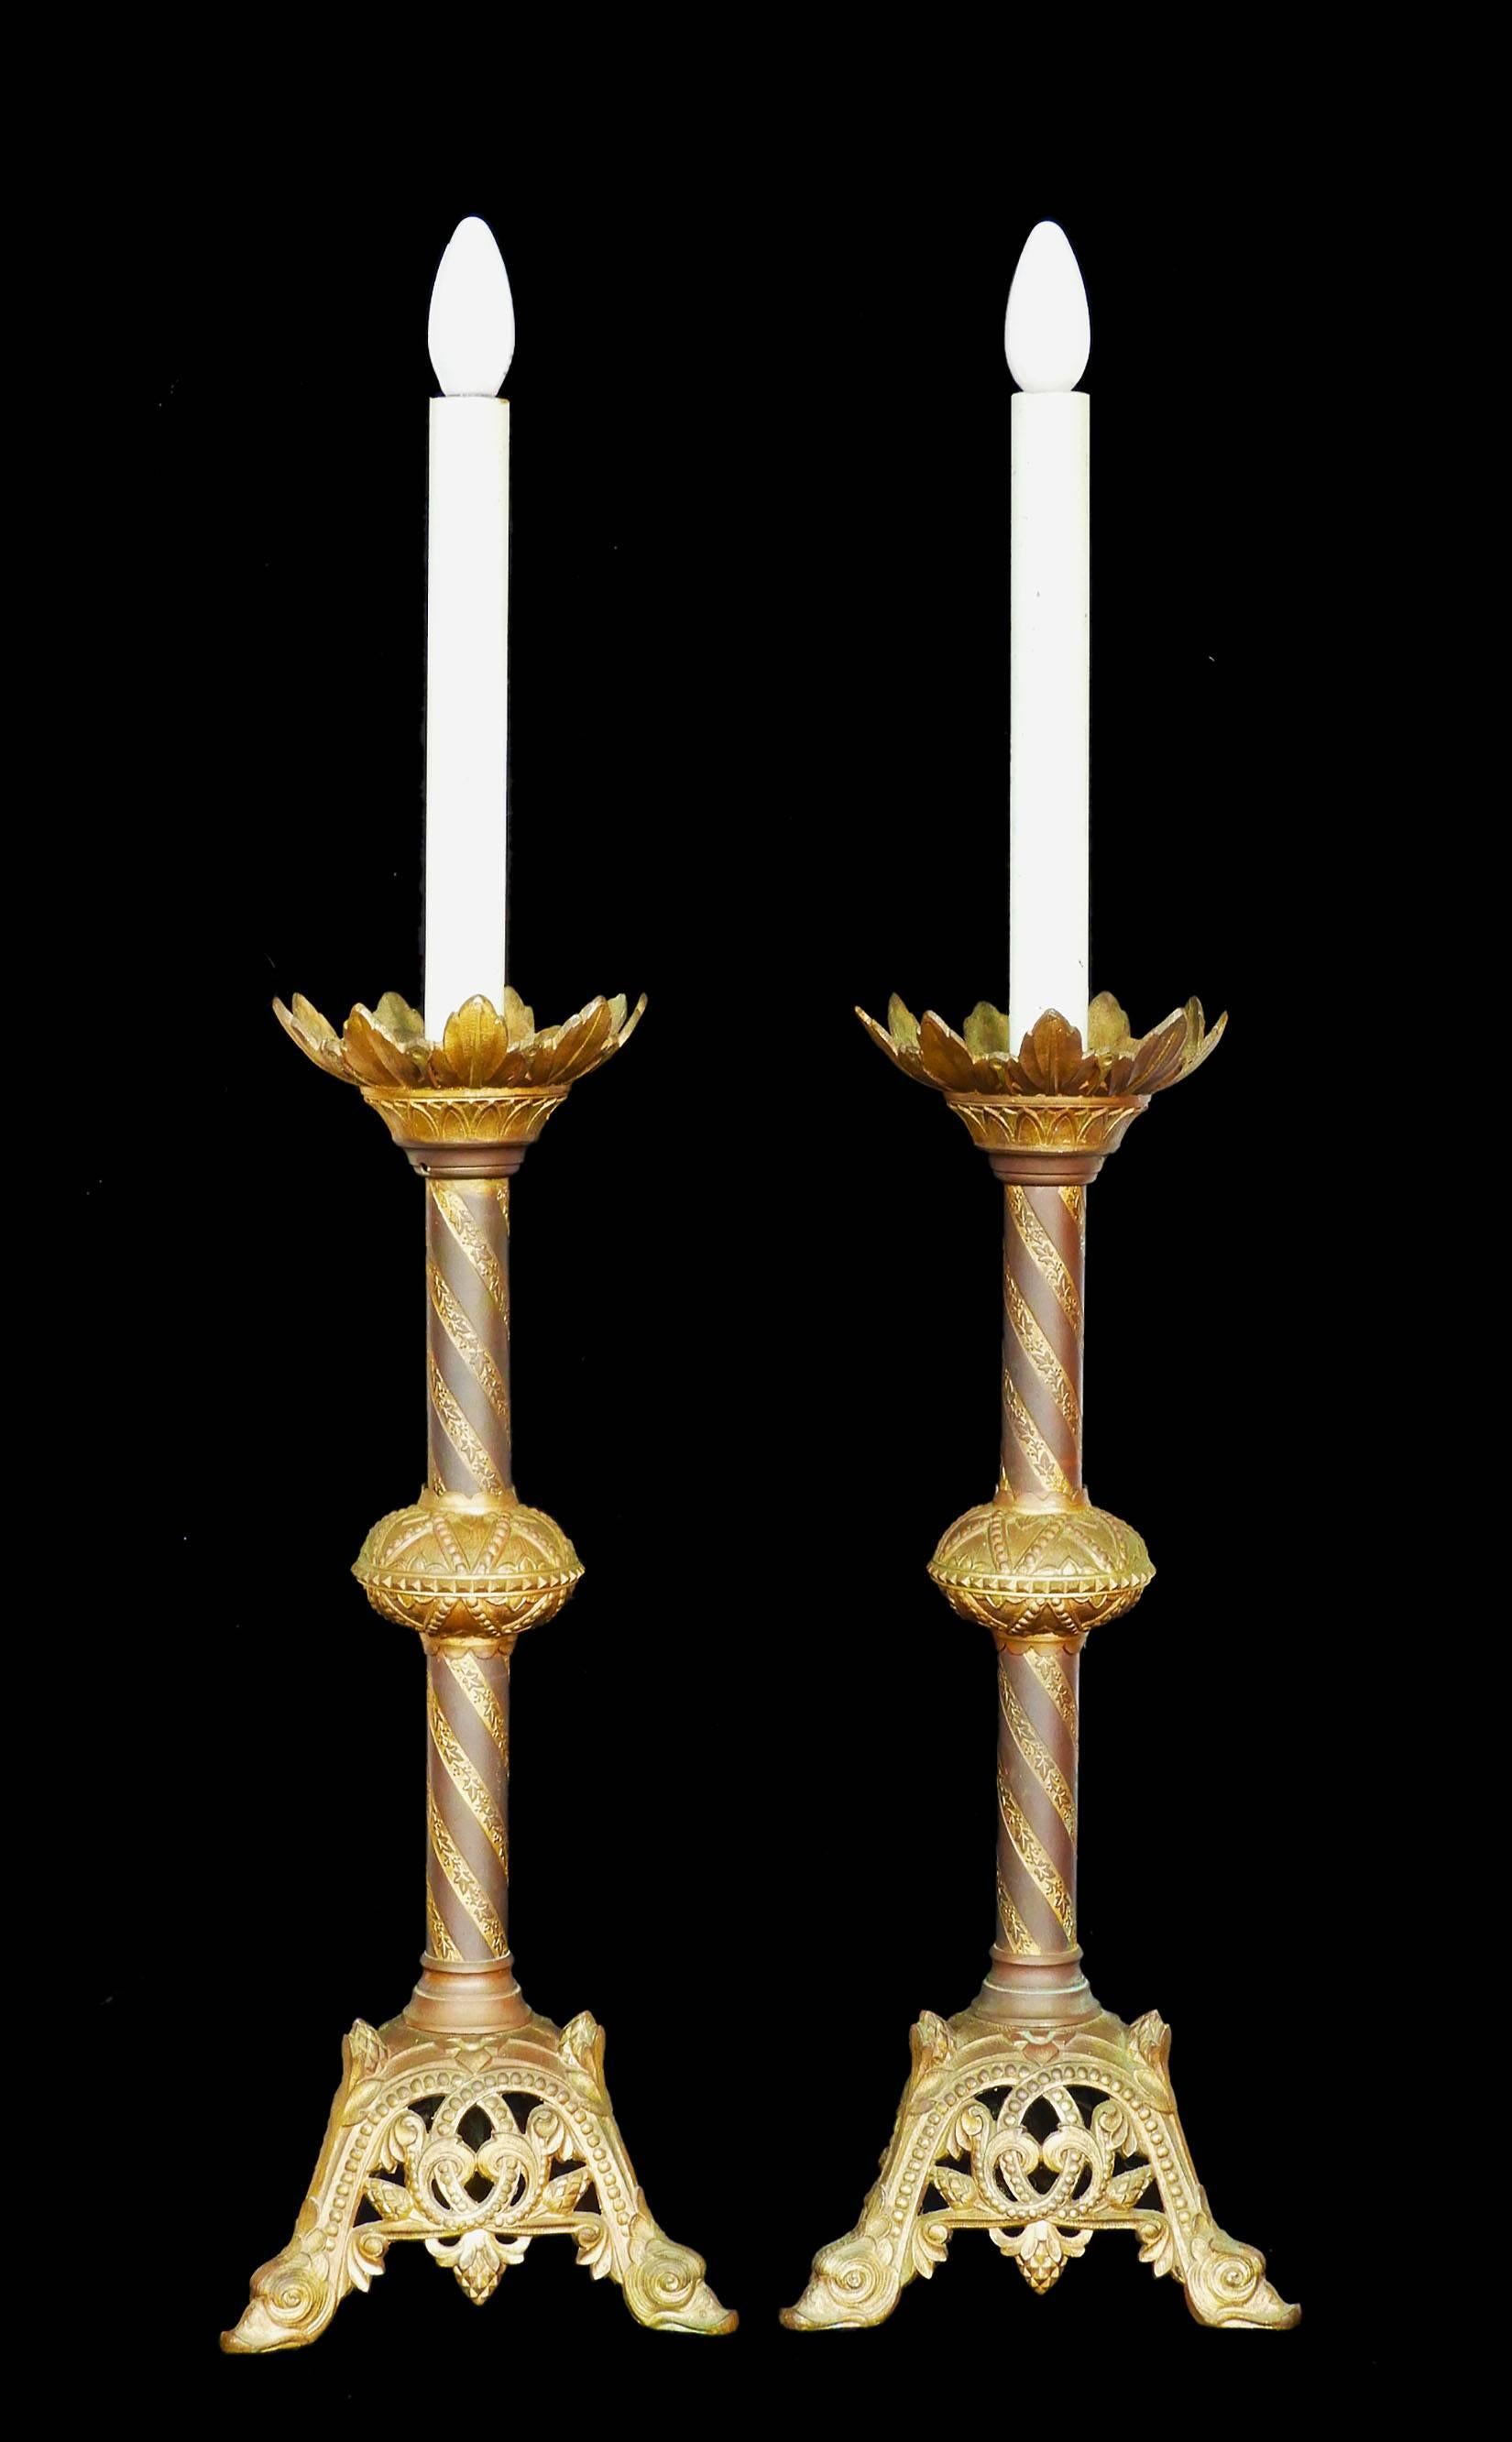 Paire de lampes chandeliers Eglise française néo-gothique
Electrifié
Bronze doré ou bronze ciselé
Bon état d'origine antique avec une grande patine
Ceux-ci seront recâblés et testés pour être conformes aux normes britanniques, européennes ou